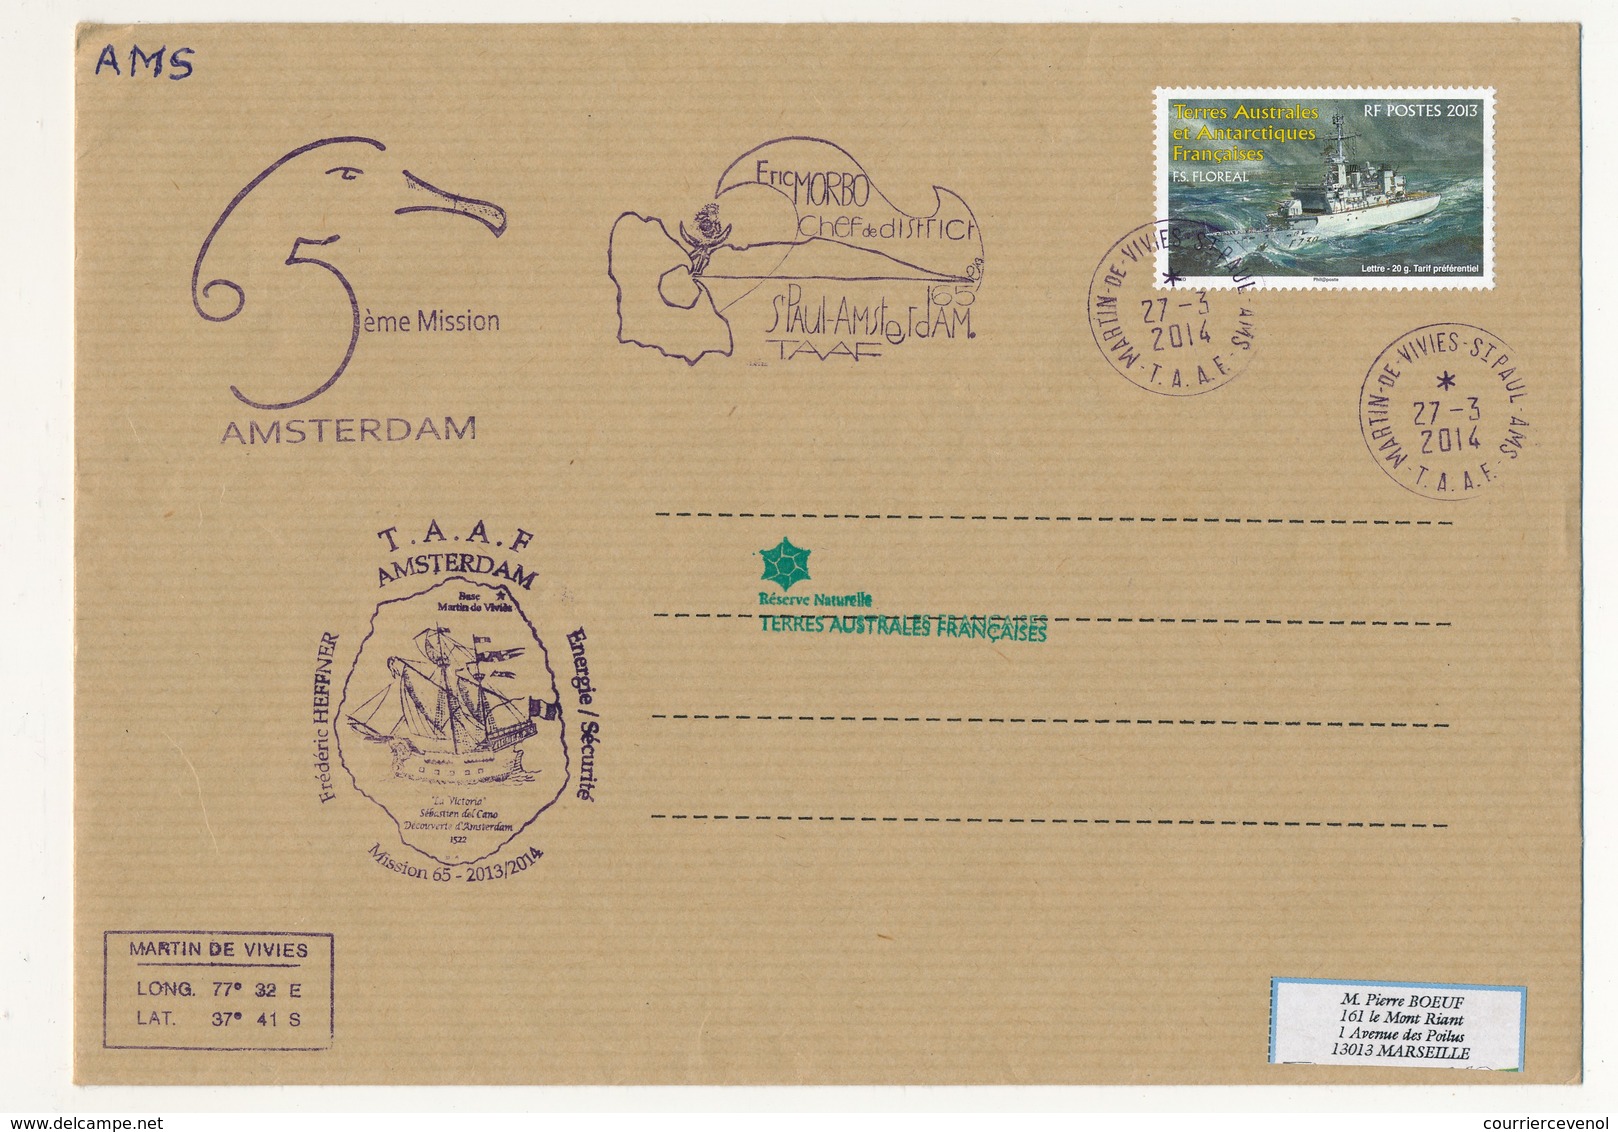 T.A.A.F - Enveloppe Martin De Vivies - St Paul Ams - 27/3/2014 - FS Floreal / 5eme Mission Amsterdam - Storia Postale